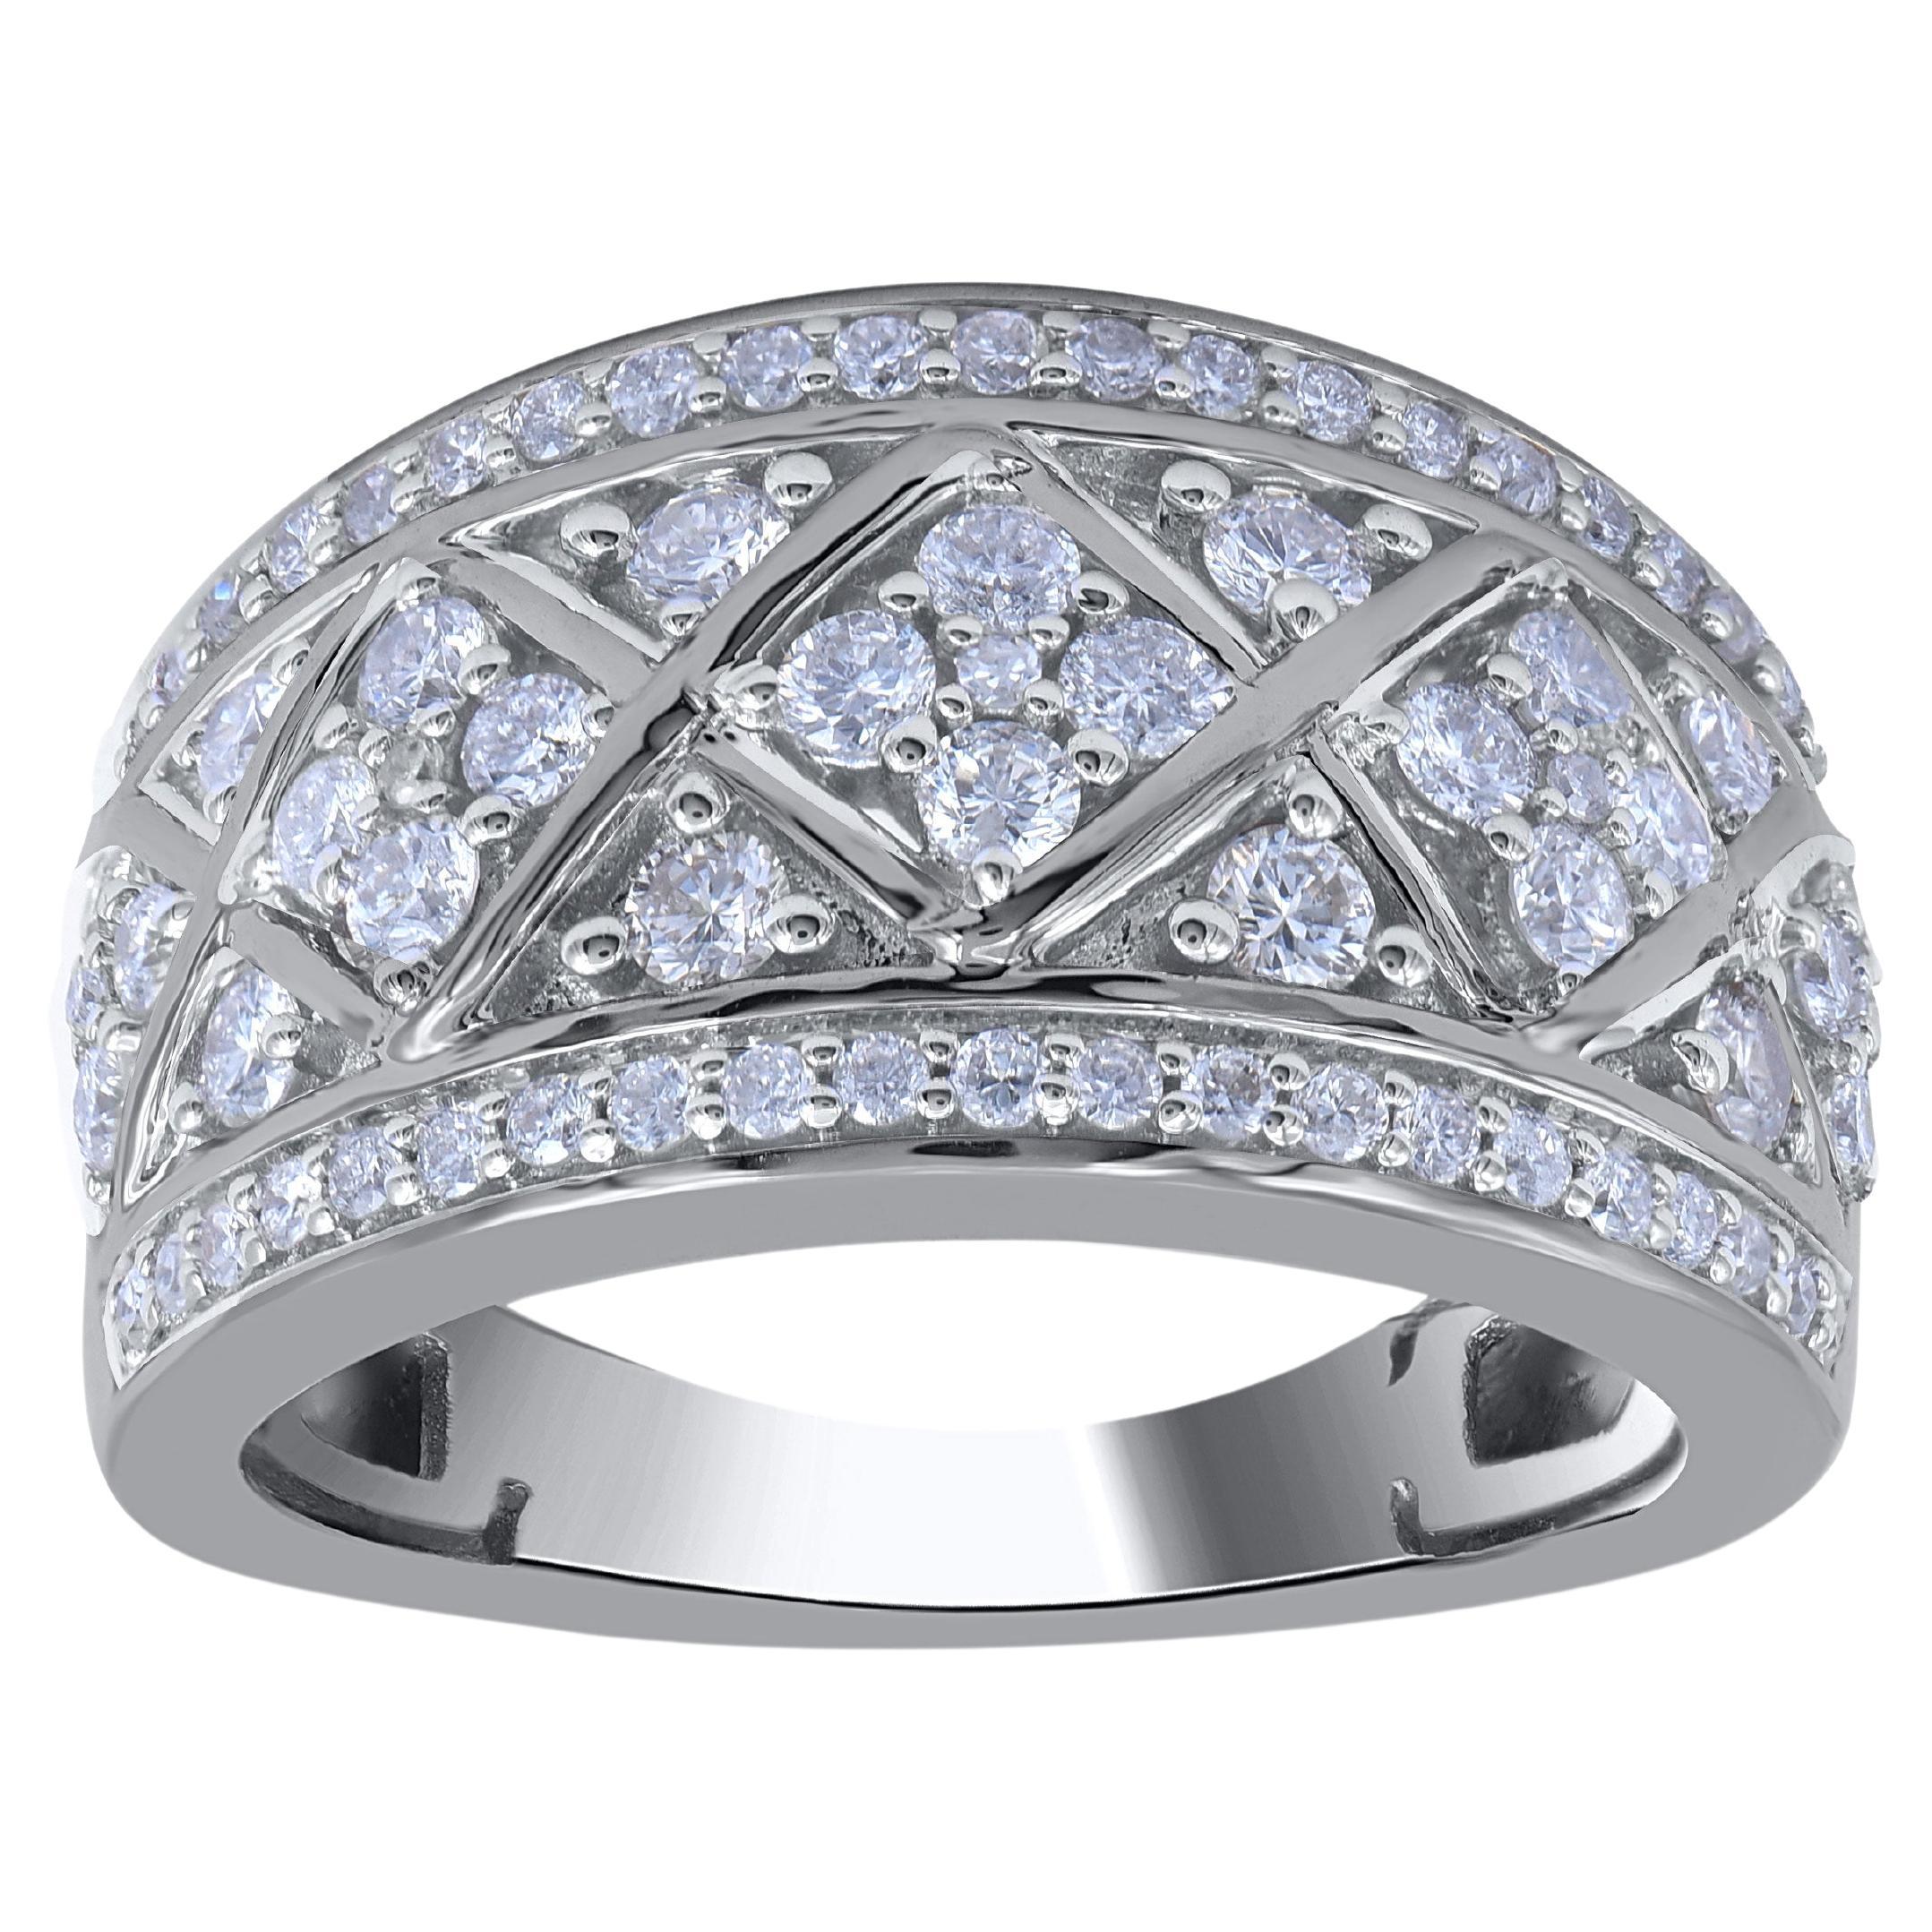 TJD 1.0 Carat Natural Round Diamond 14 Karat White Gold Wedding Band Ring